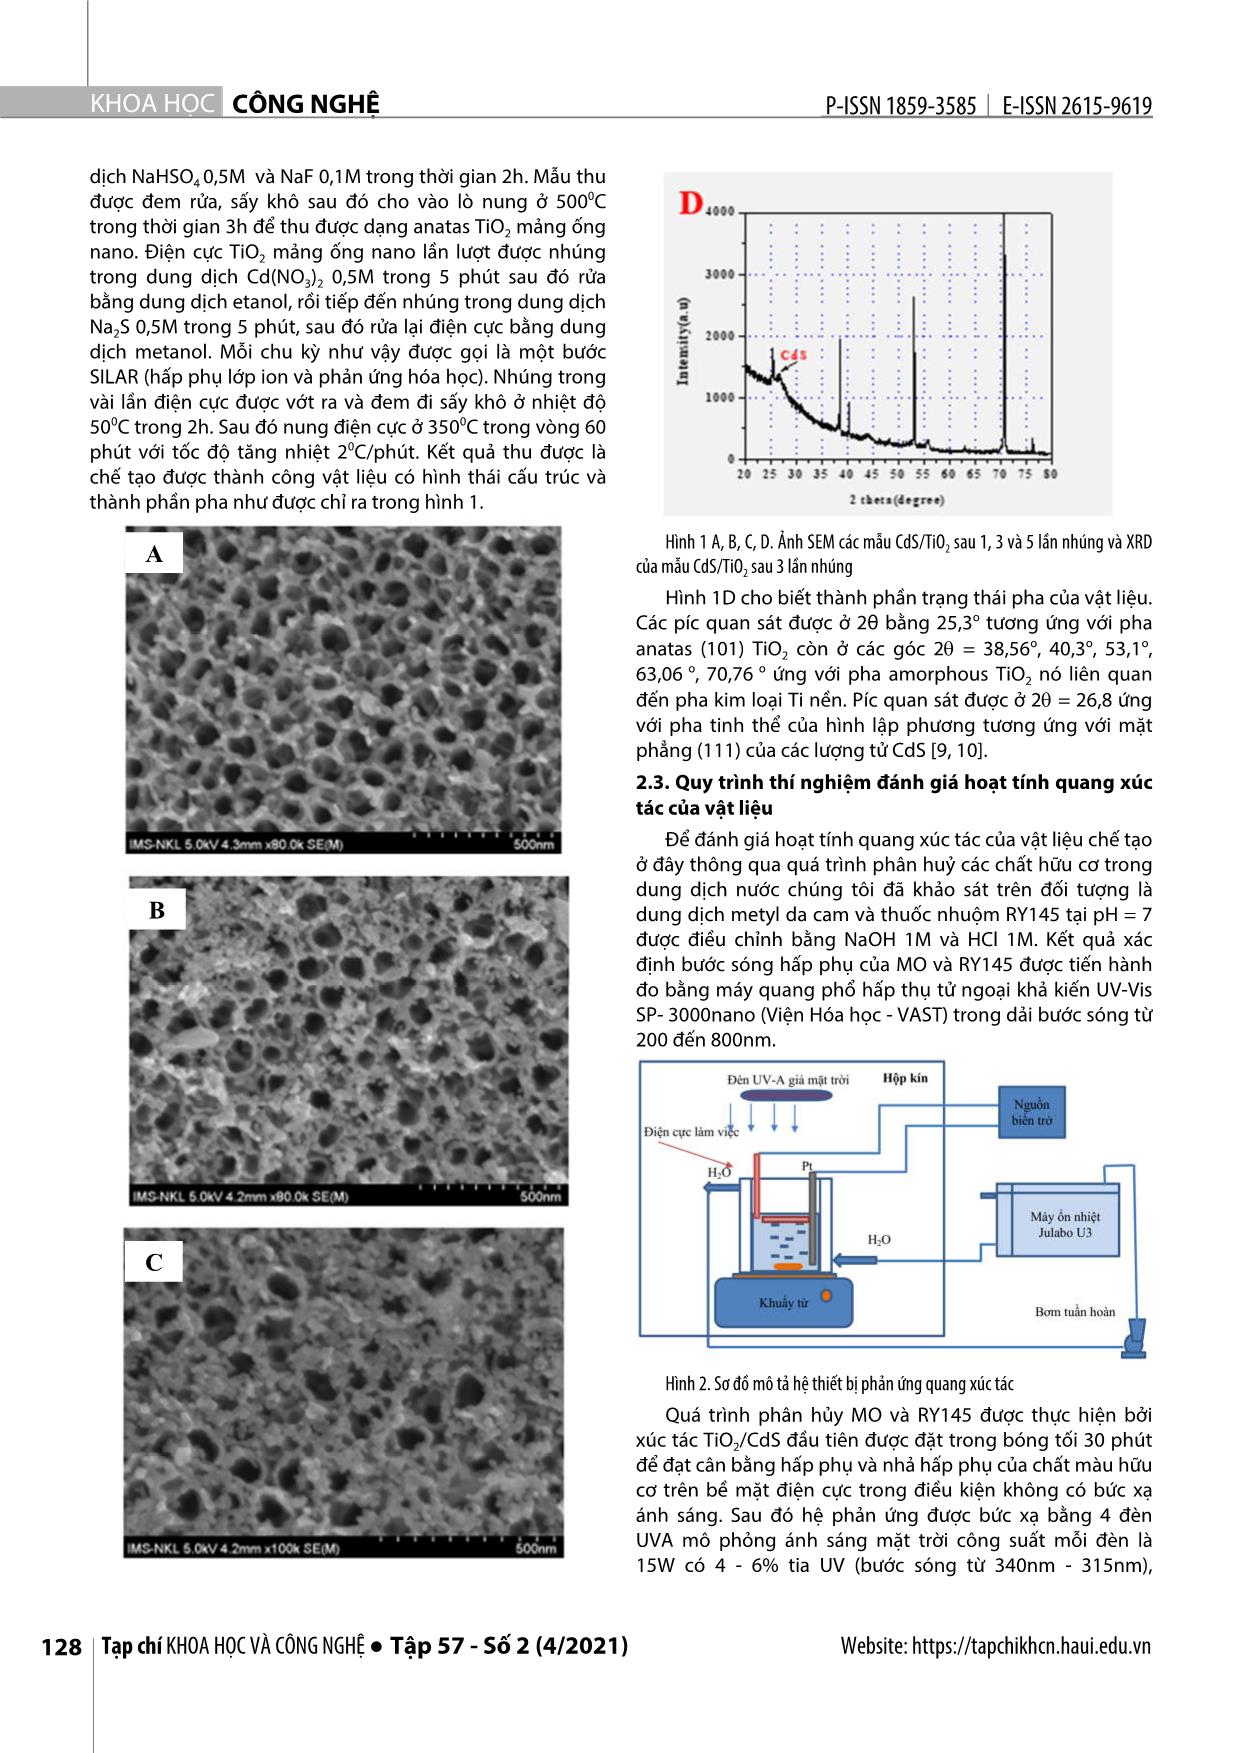 Quang xúc tác phân hủy metyl da cam và thuốc nhuộm RY145 sử dụng vật liệu mảng ống nano CdS/TiO2 trang 2